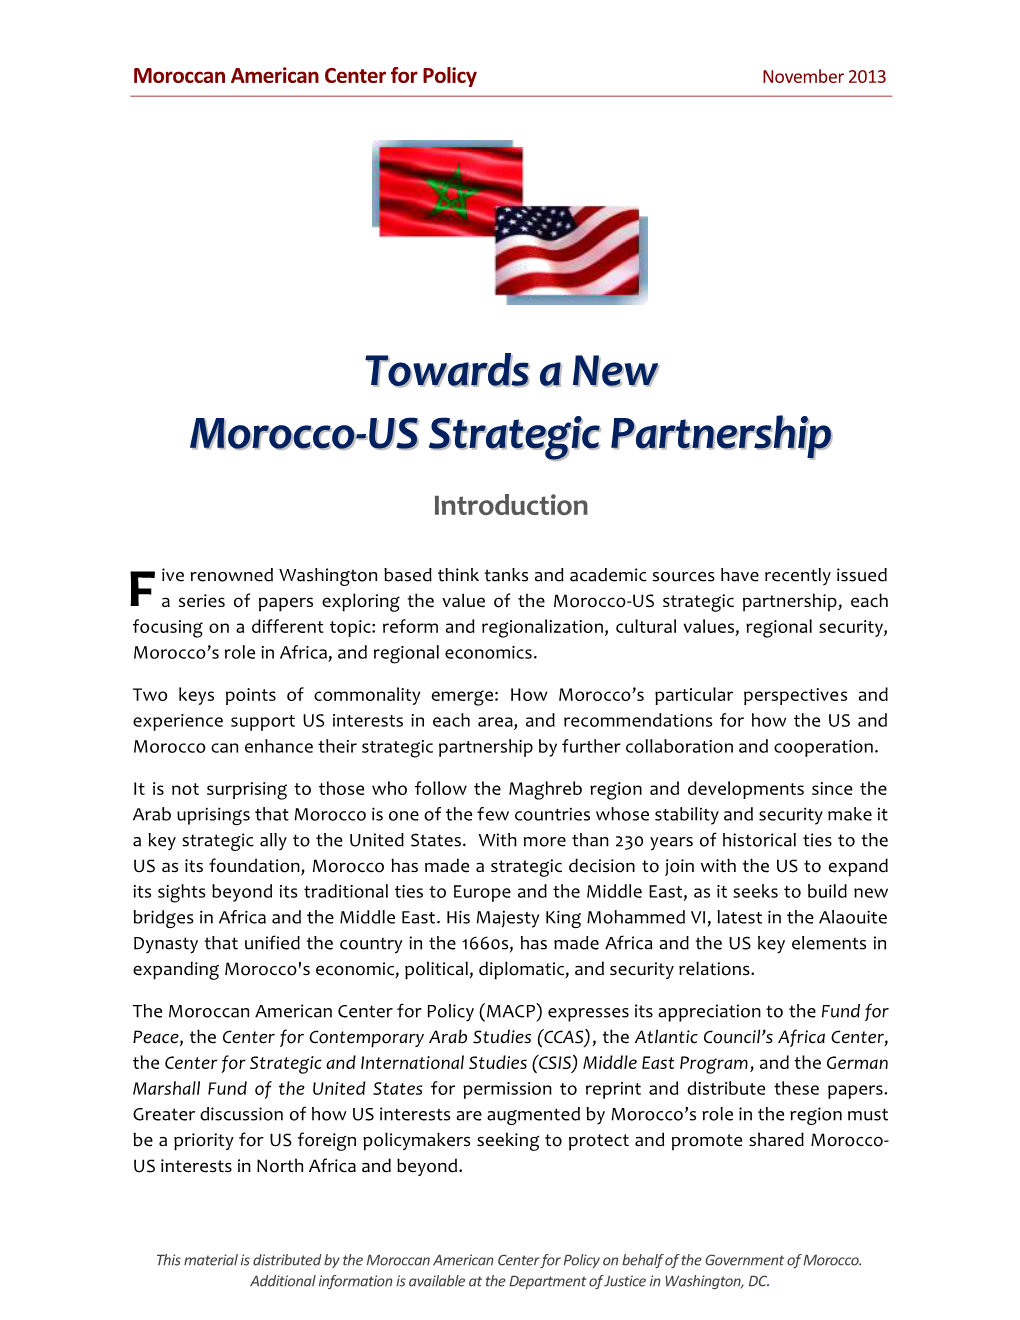 Towards a New Morocco-US Strategic Partnership